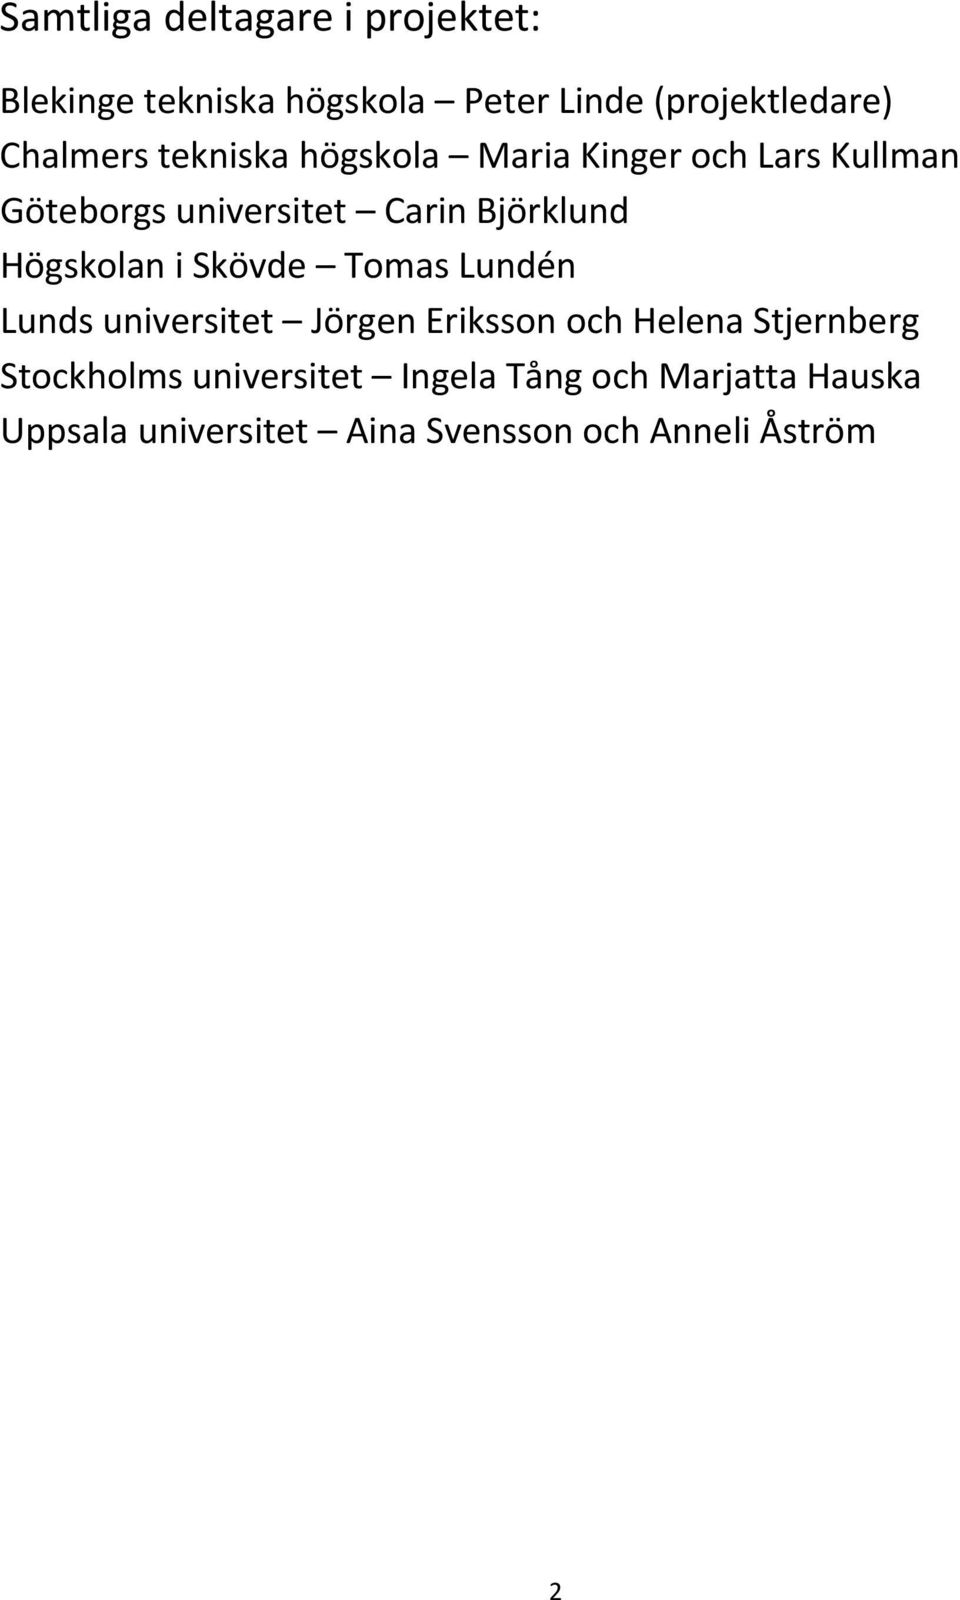 Högskolan i Skövde Tomas Lundén Lunds universitet Jörgen Eriksson och Helena Stjernberg